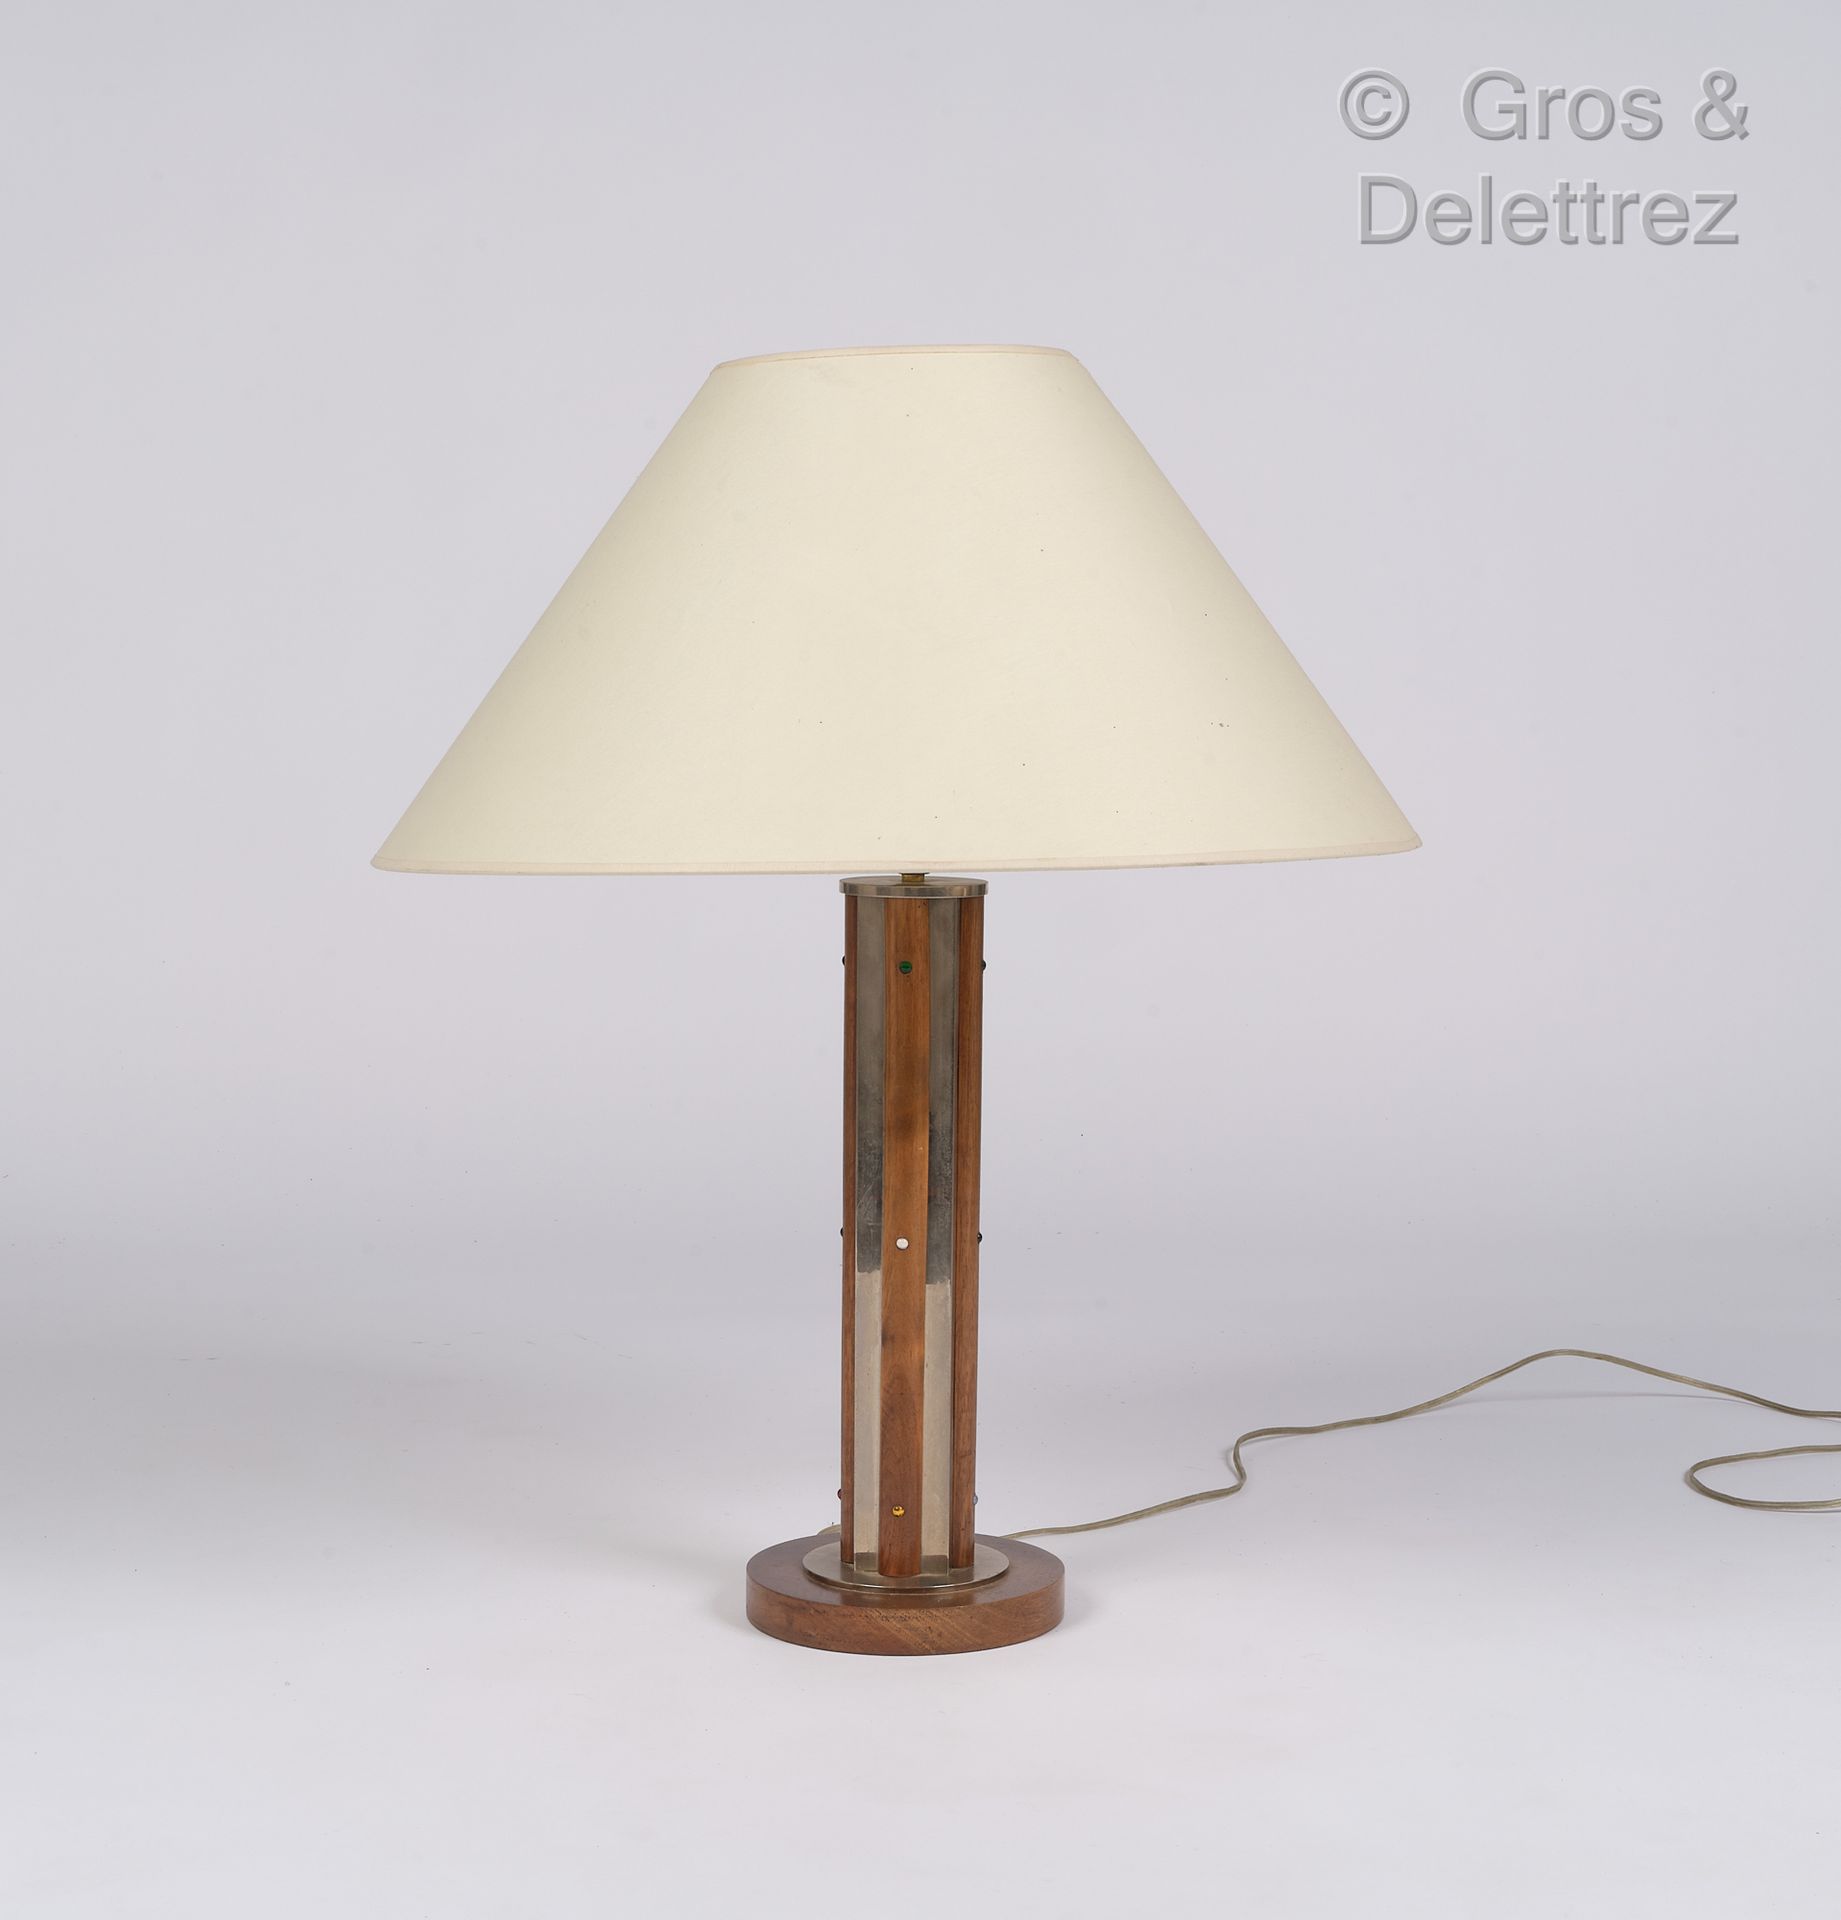 Null Opera modernista

Lampada da tavolo in legno e metallo cromato

H: 49 cm